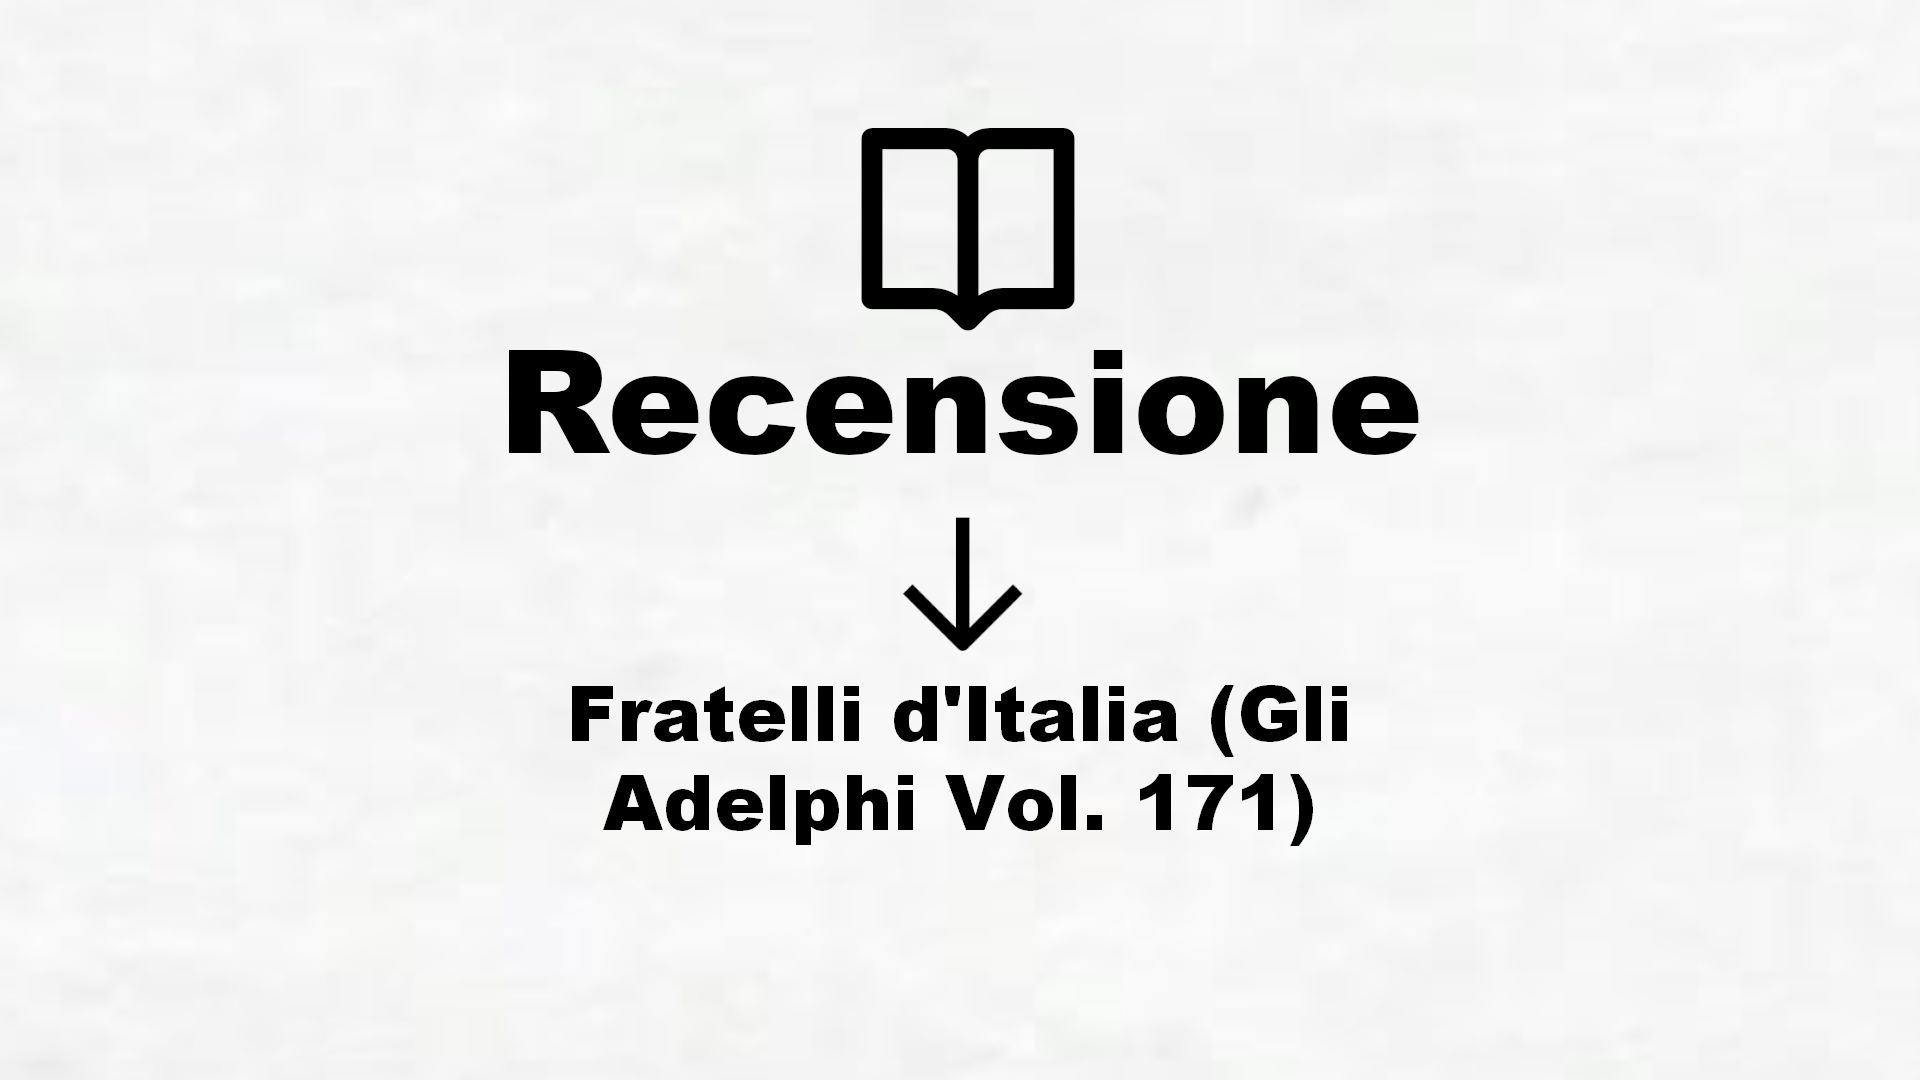 Fratelli d’Italia (Gli Adelphi Vol. 171) – Recensione Libro